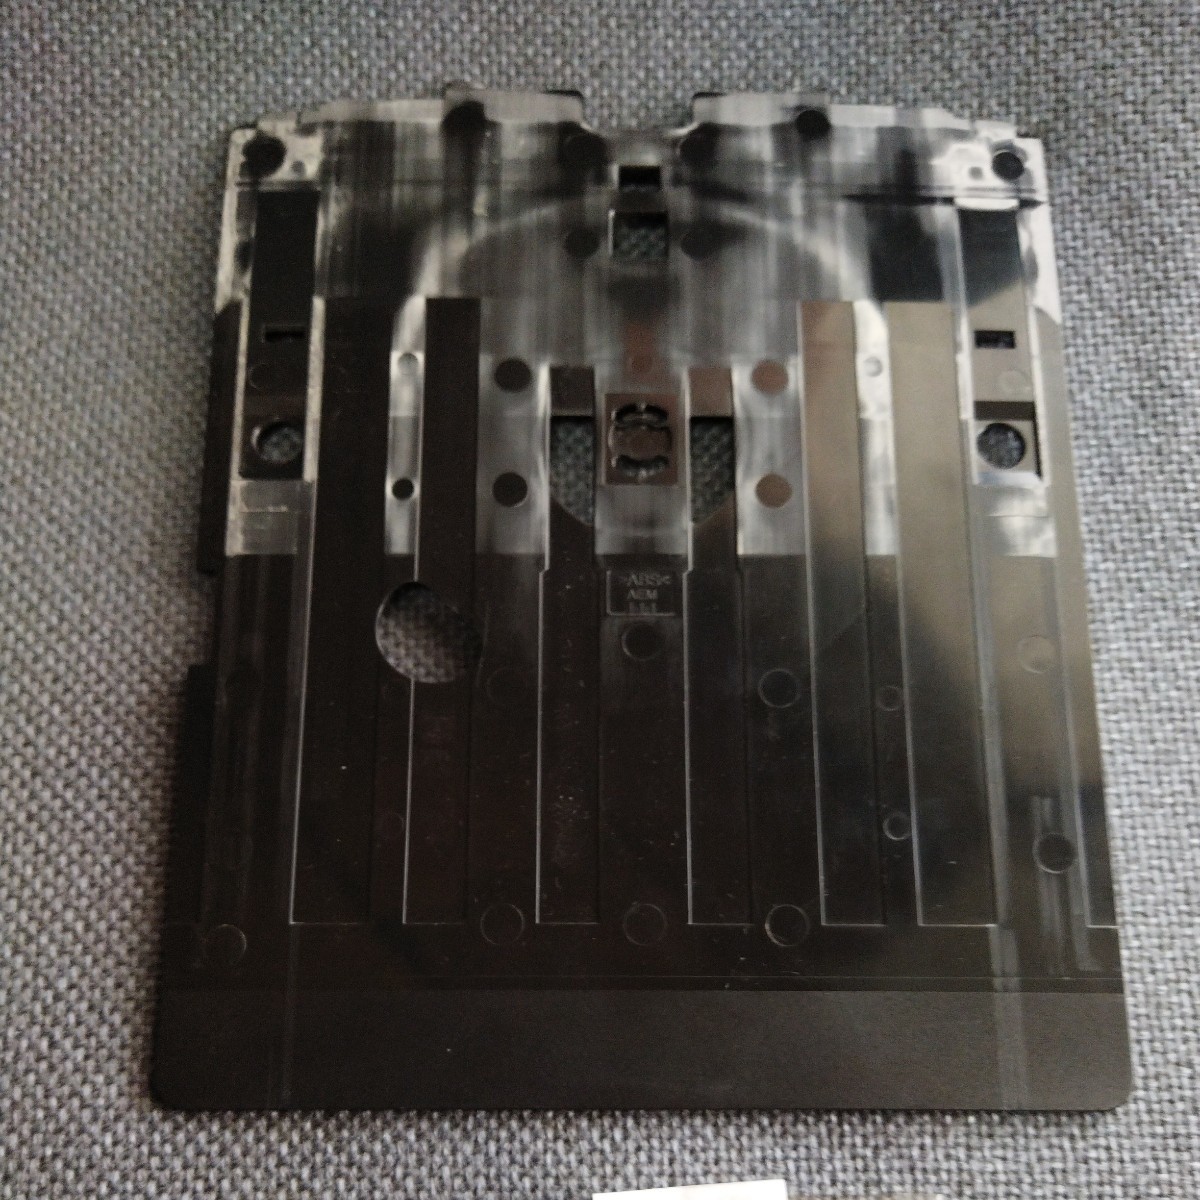 EPSON этикетка печать tray AEM1-1-1 контрольный номер 2350